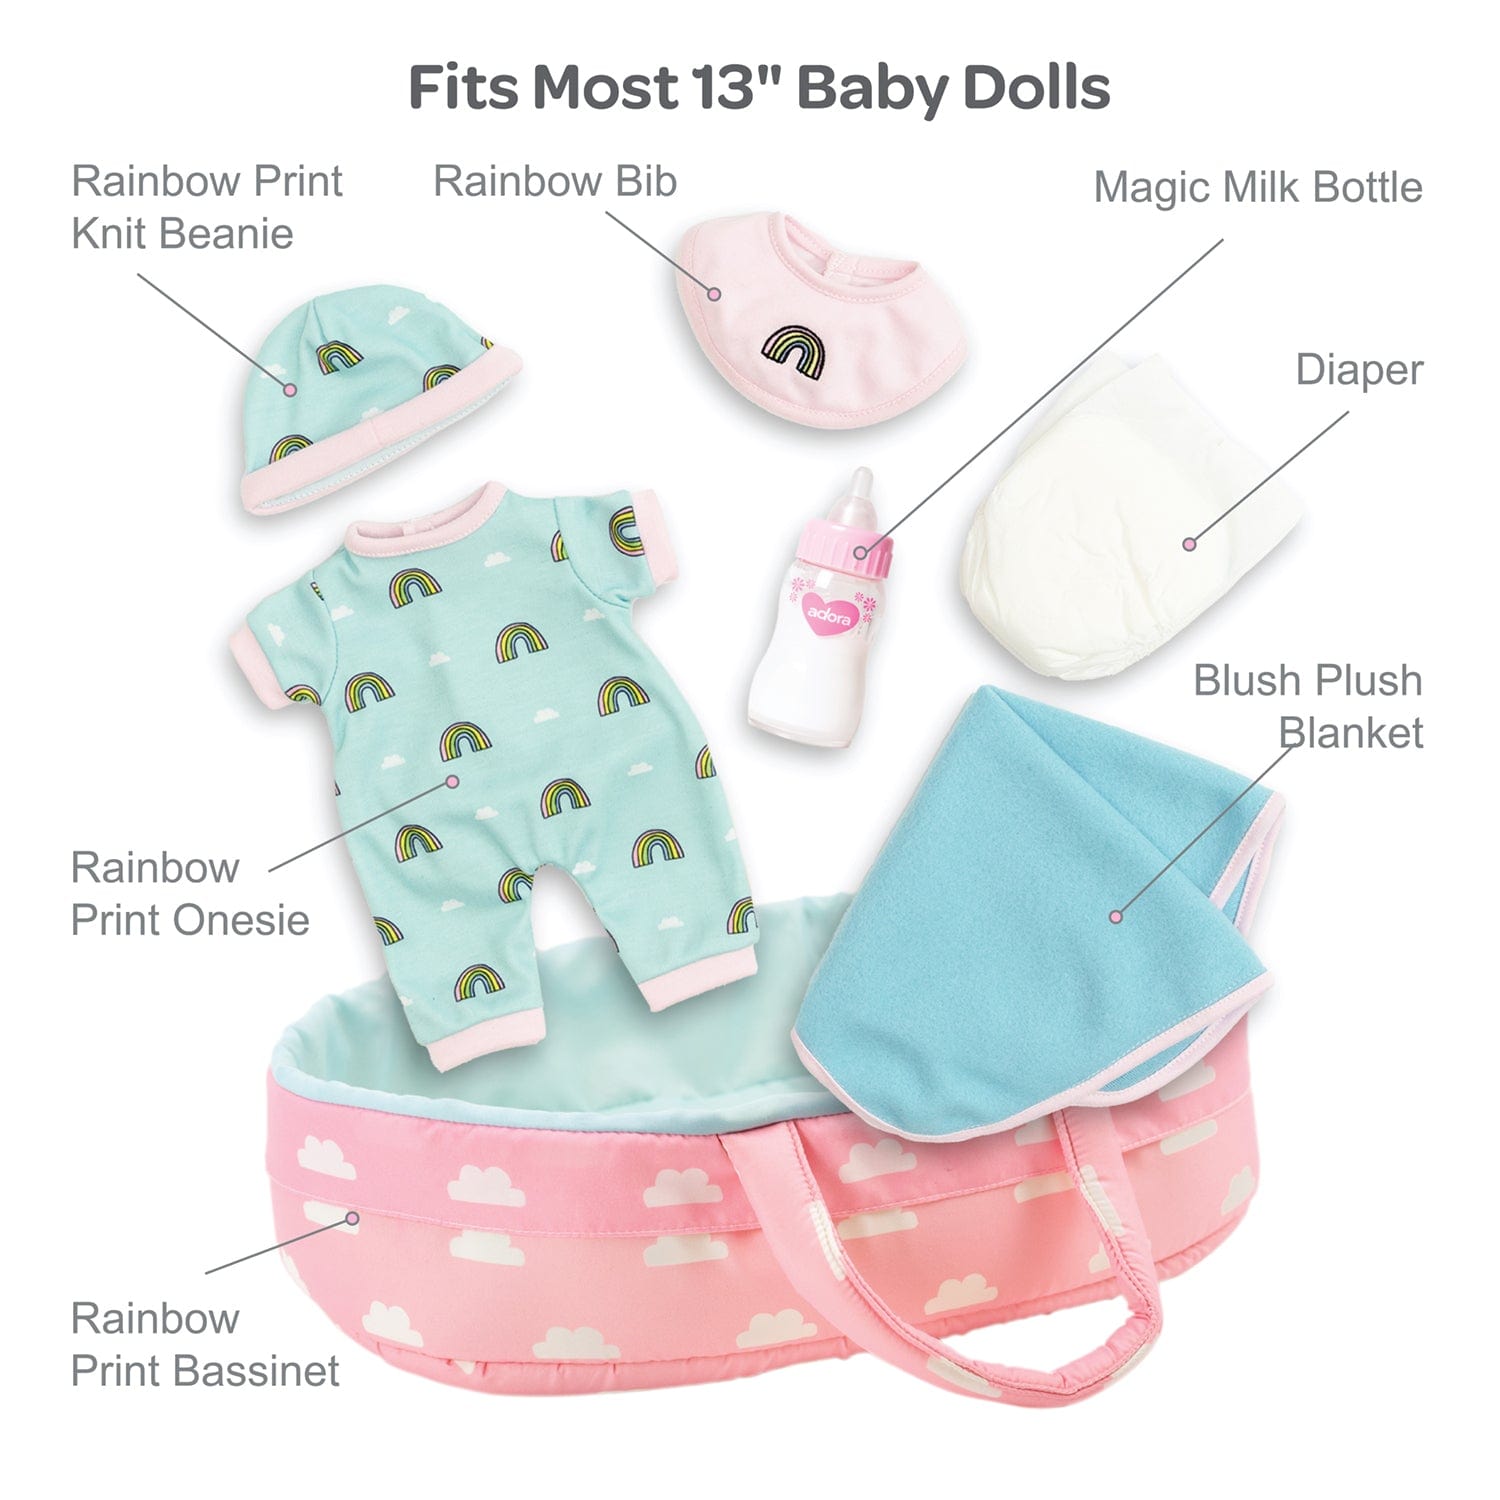 PlayTime Nurturing Essentials for 13 inch Babies -7 Piece Gift Set in Rainbow print